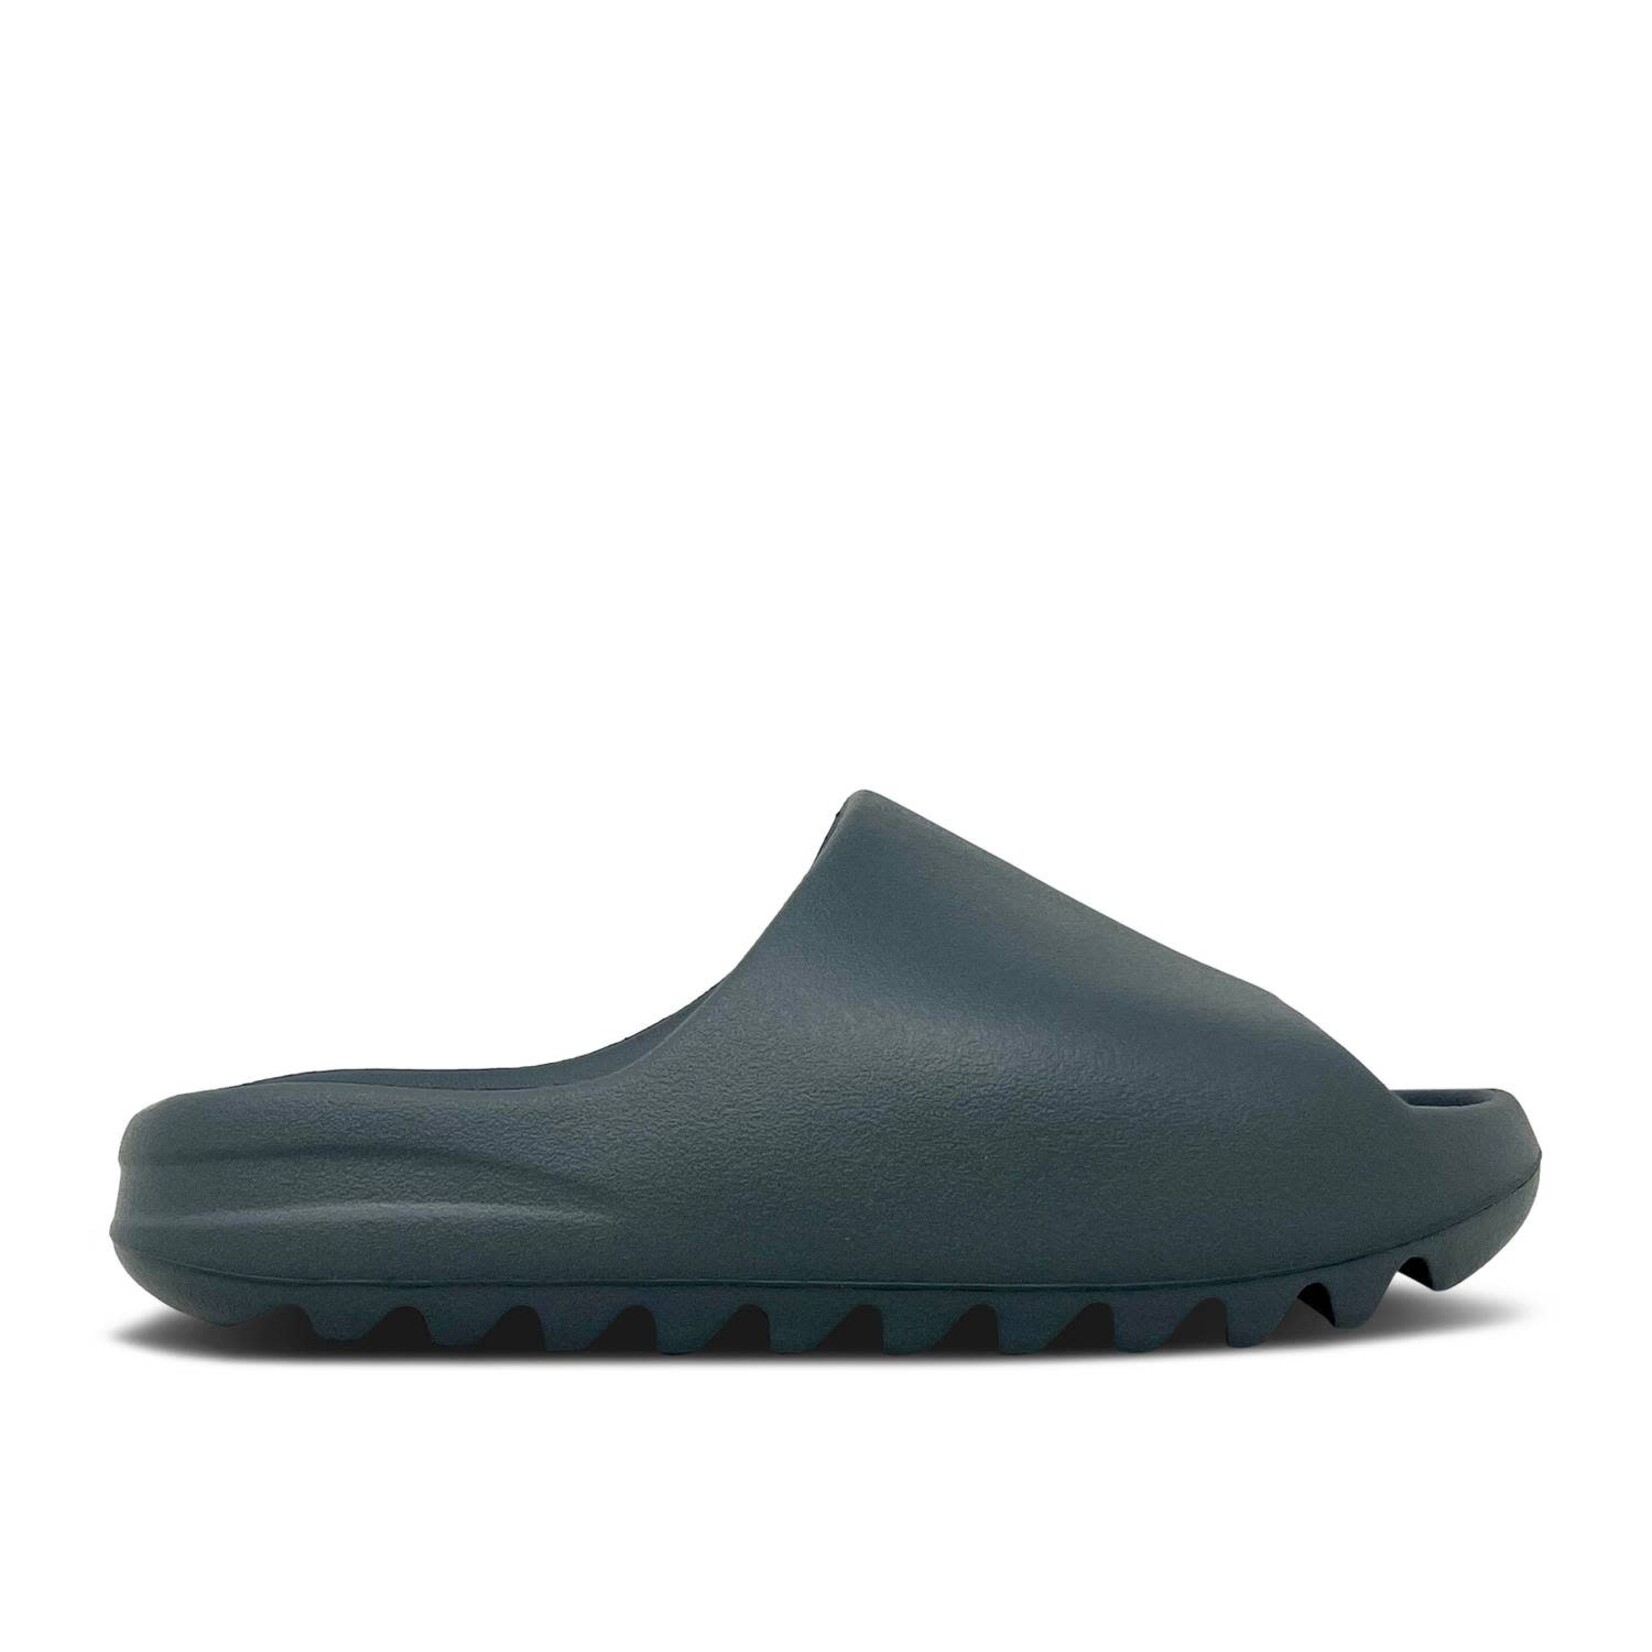 Adidas adidas Yeezy Slide Slate Grey Size 11, DS BRAND NEW 